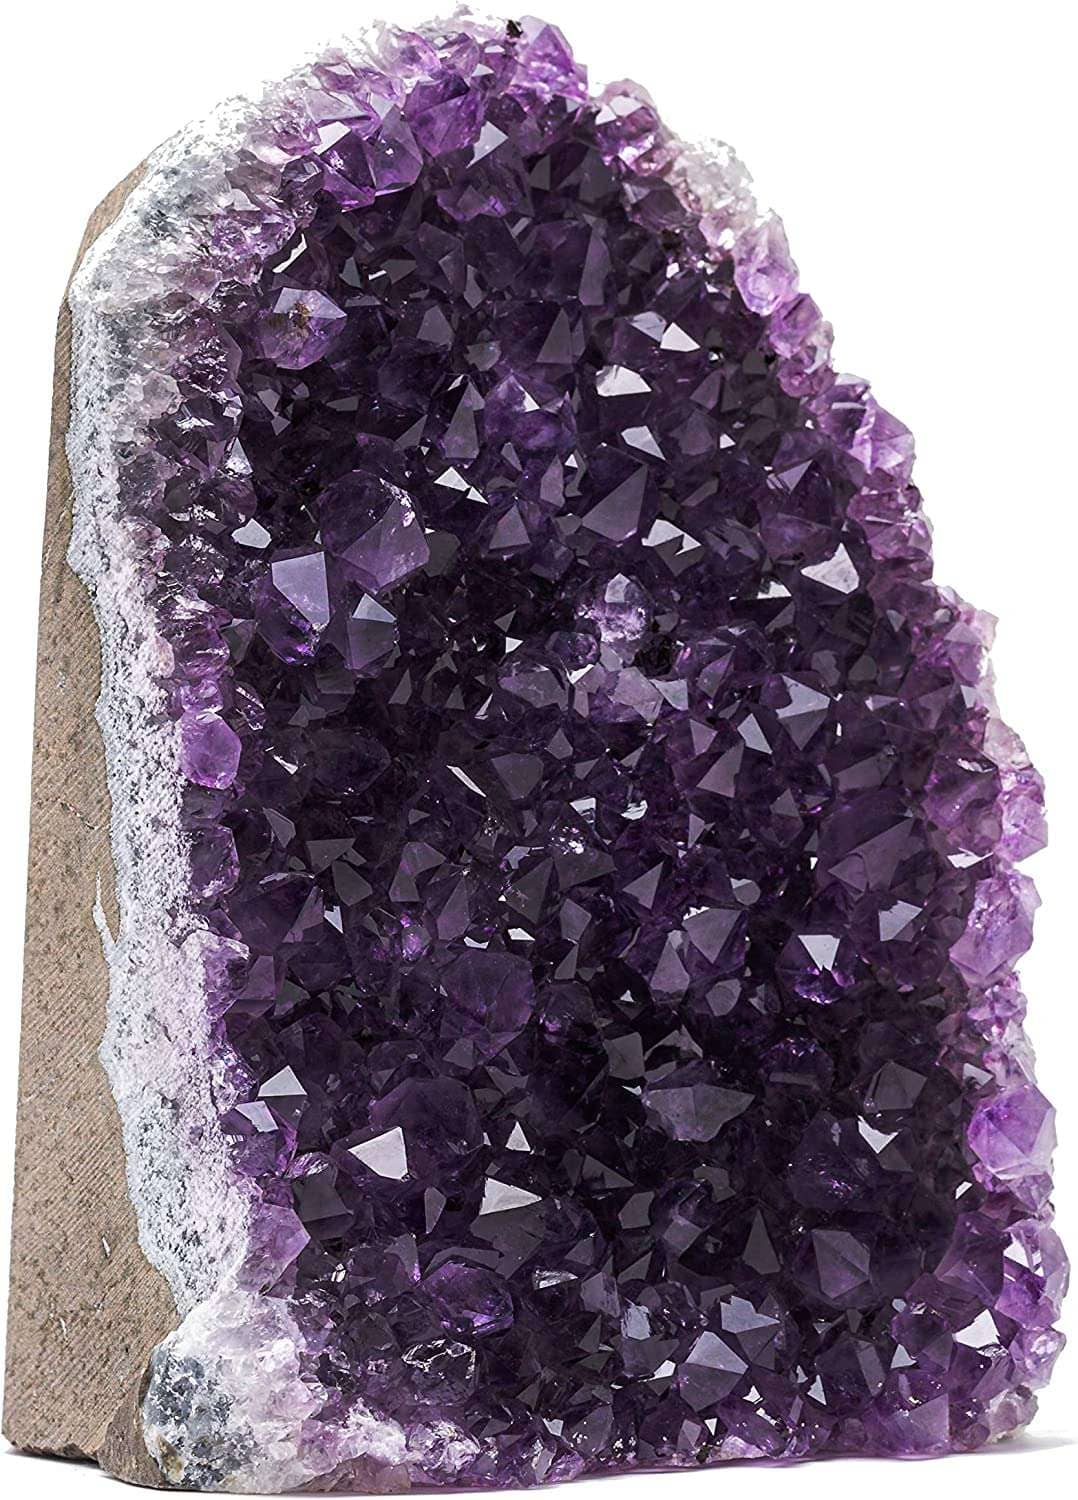 Uruguayan Amethyst, Amethyst, Beautiful Amethyst, Crystal, Purple